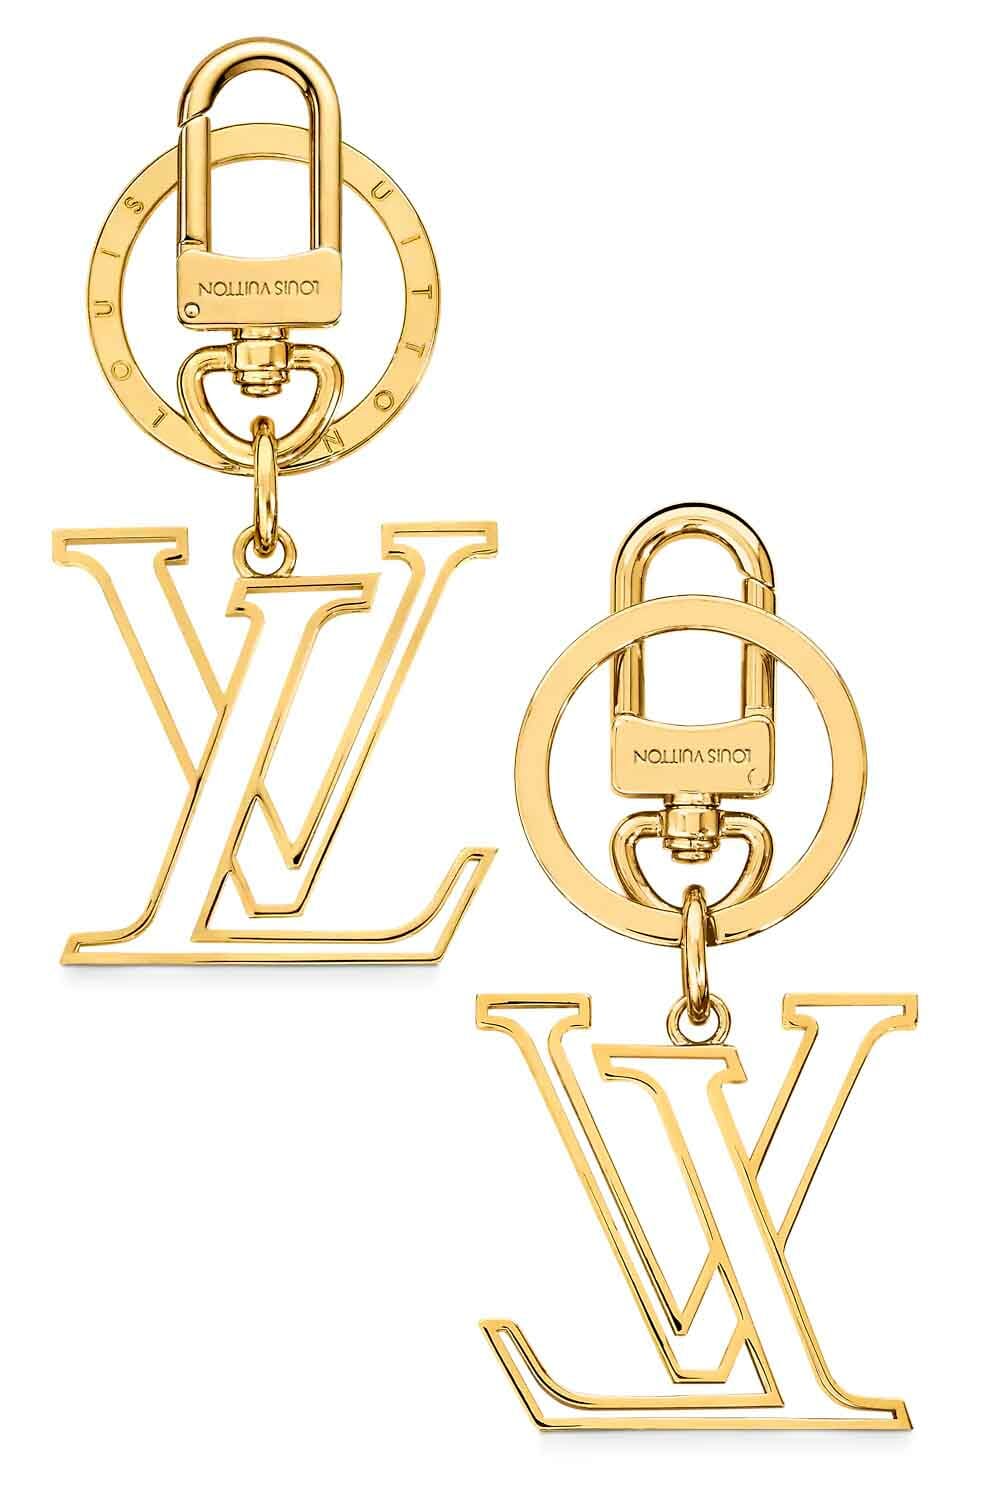 Cinturón de Louis Vuitton  Regalos de lujo por menos de 300 euros de  Gucci, Hermès, Louis